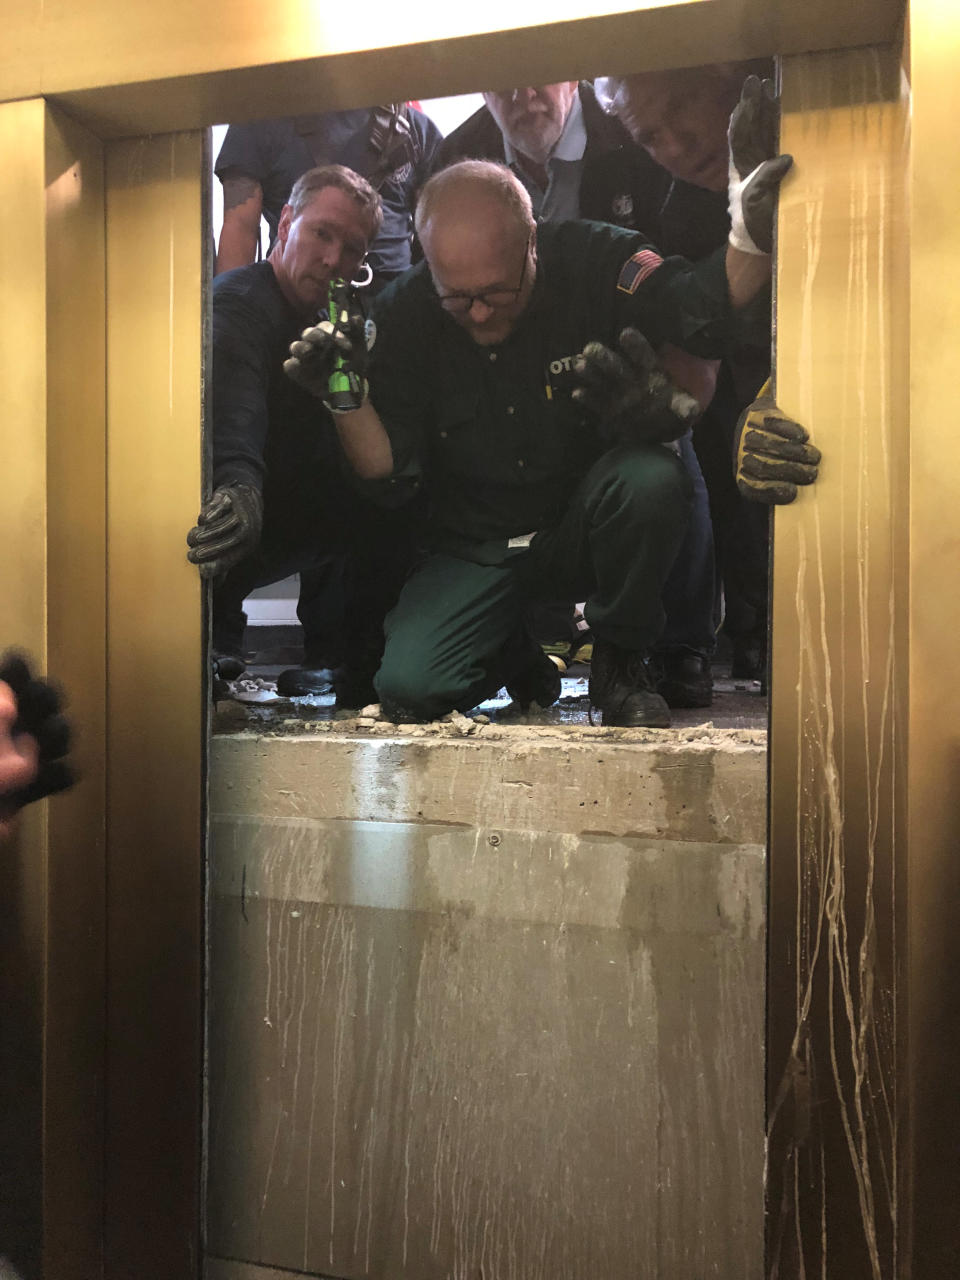 El equipo que rescató a las personas atrapadas en el ascensor. Katy Martinez/via REUTERS